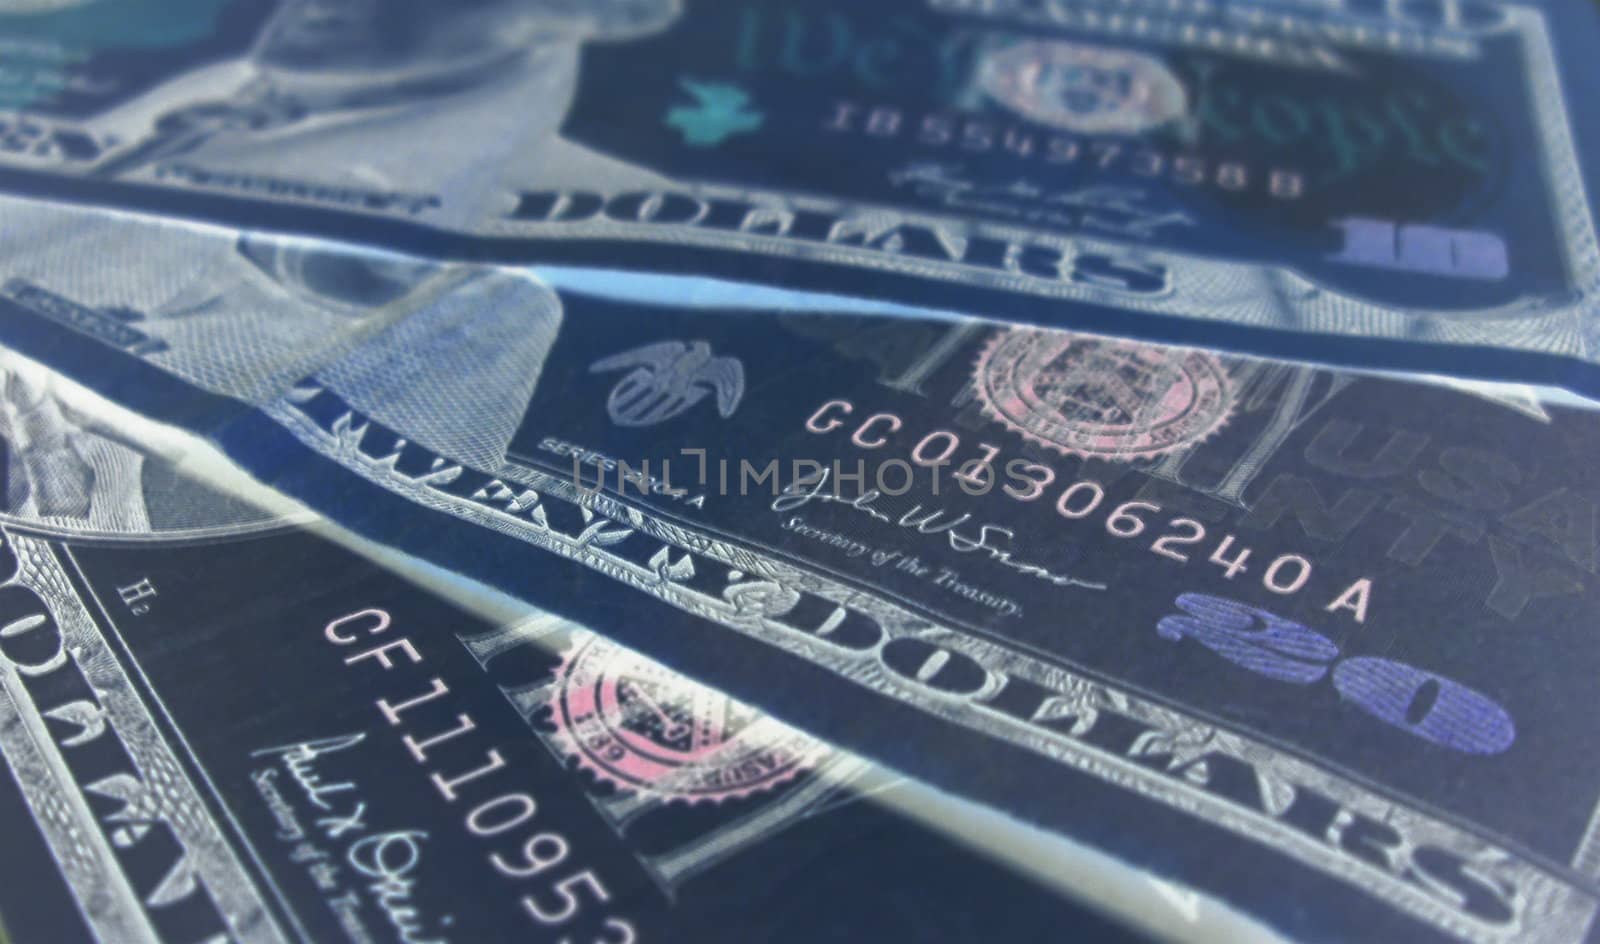 The 5, 10, 20 USA dollars banknotes